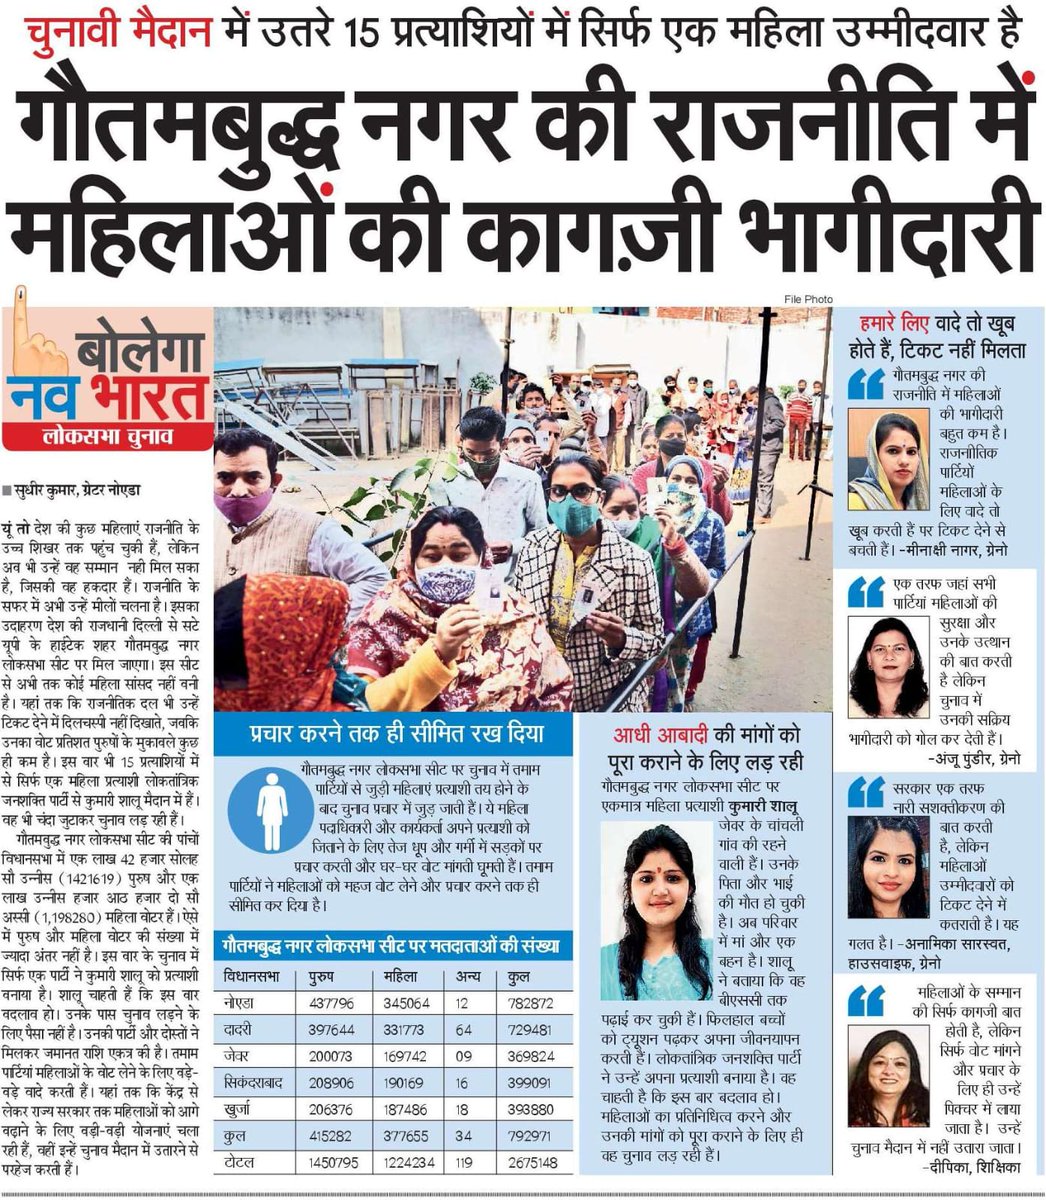 गौतम बुद्ध नगर की राजनीति में तमाम पार्टियों ने महिलाओं को चुनाव प्रचार तक ही सीमित रखा है। जबकि जिले में साक्षरता के मामले में बहुत आगे है महिलाएं। लेकिन प्रतिनिधित्व करने का मौका नहीं देती राजनीतिक पार्टियों. (आज की मेरी खास खबर) @NBTDilli @UPNBT @PushpinderNBT